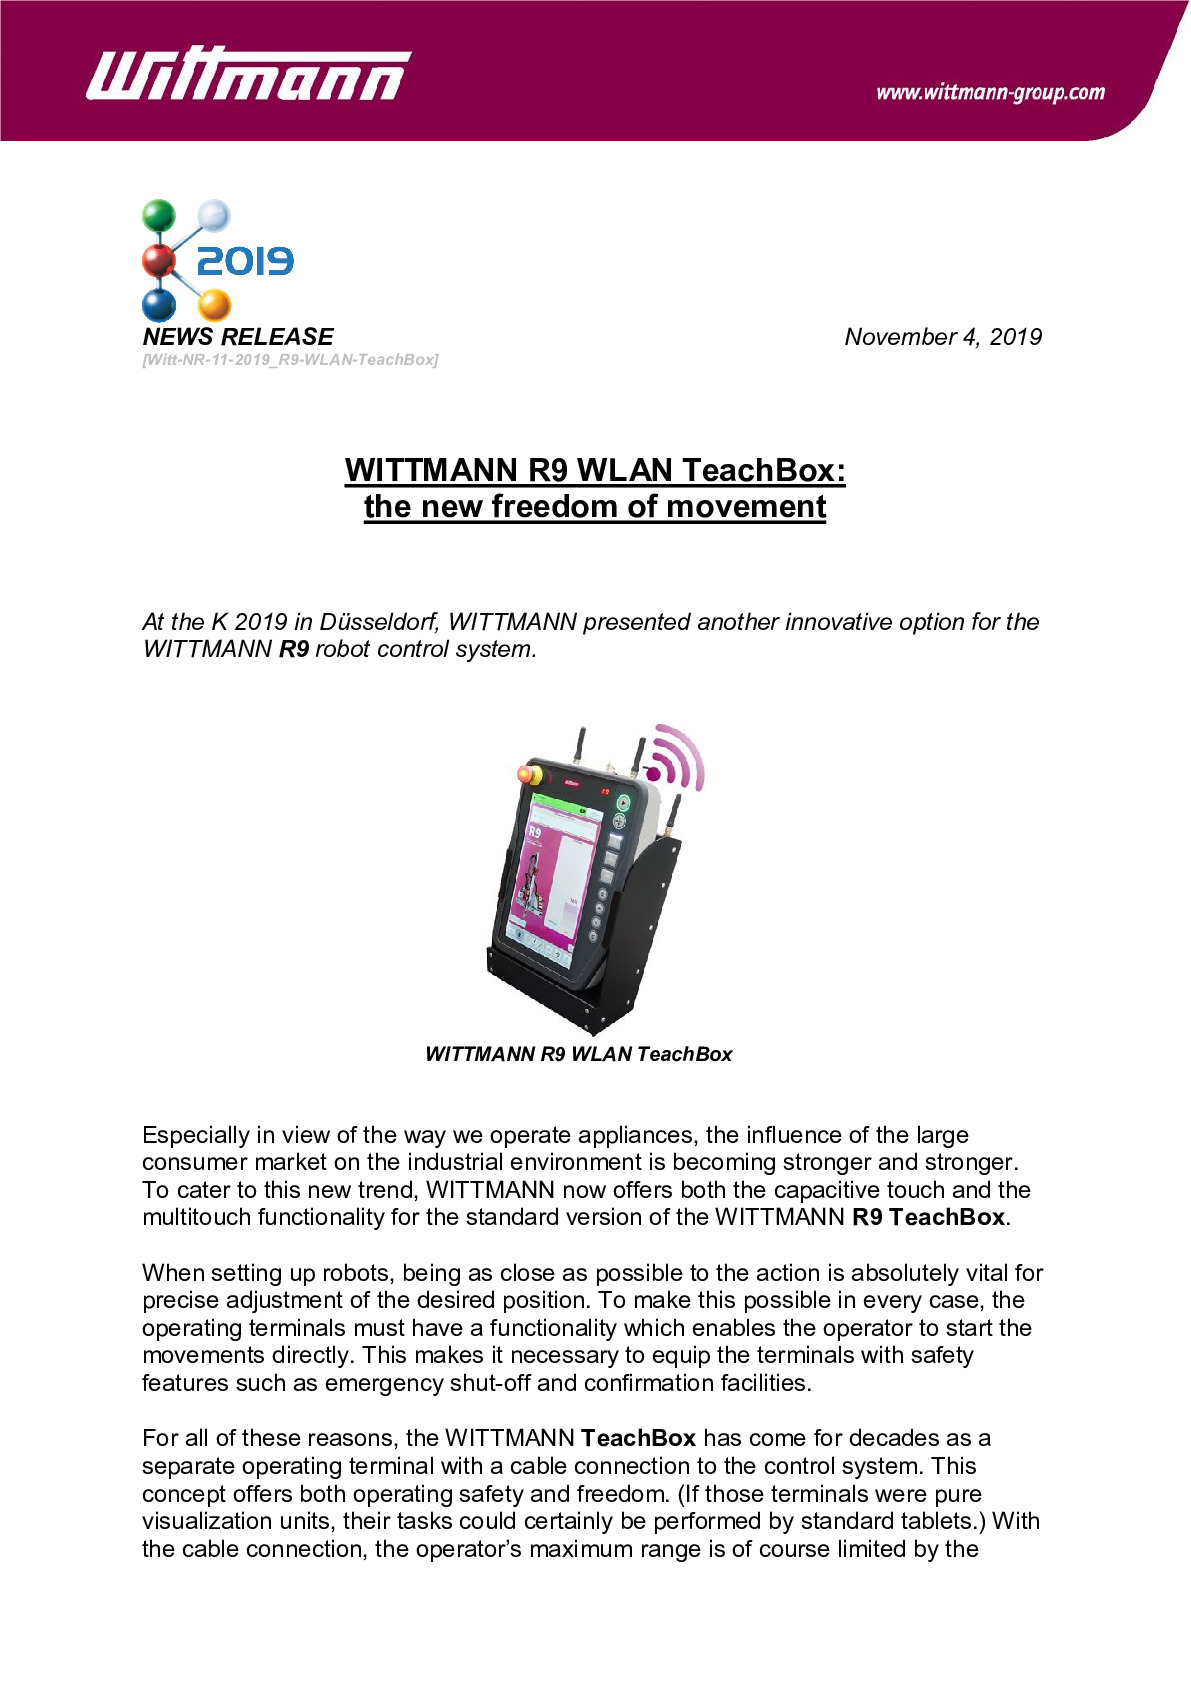 Witt-NR-11-2019_R9-WLAN-TeachBox